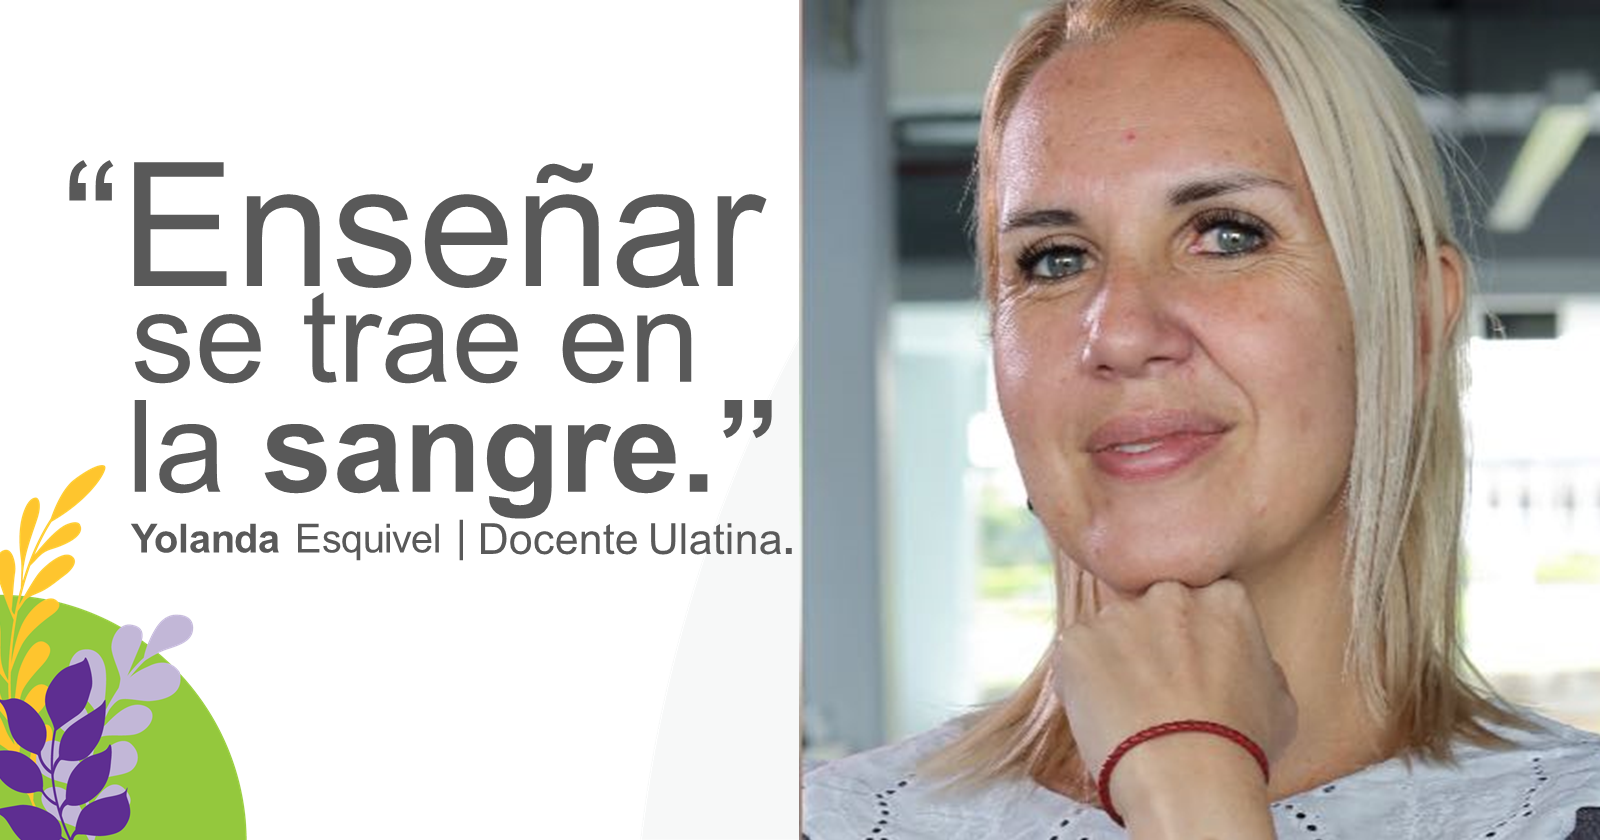 “Es un reto el que padres nos depositen la formación profesional de sus hijos” Yolanda Esquivel, docente ULatina